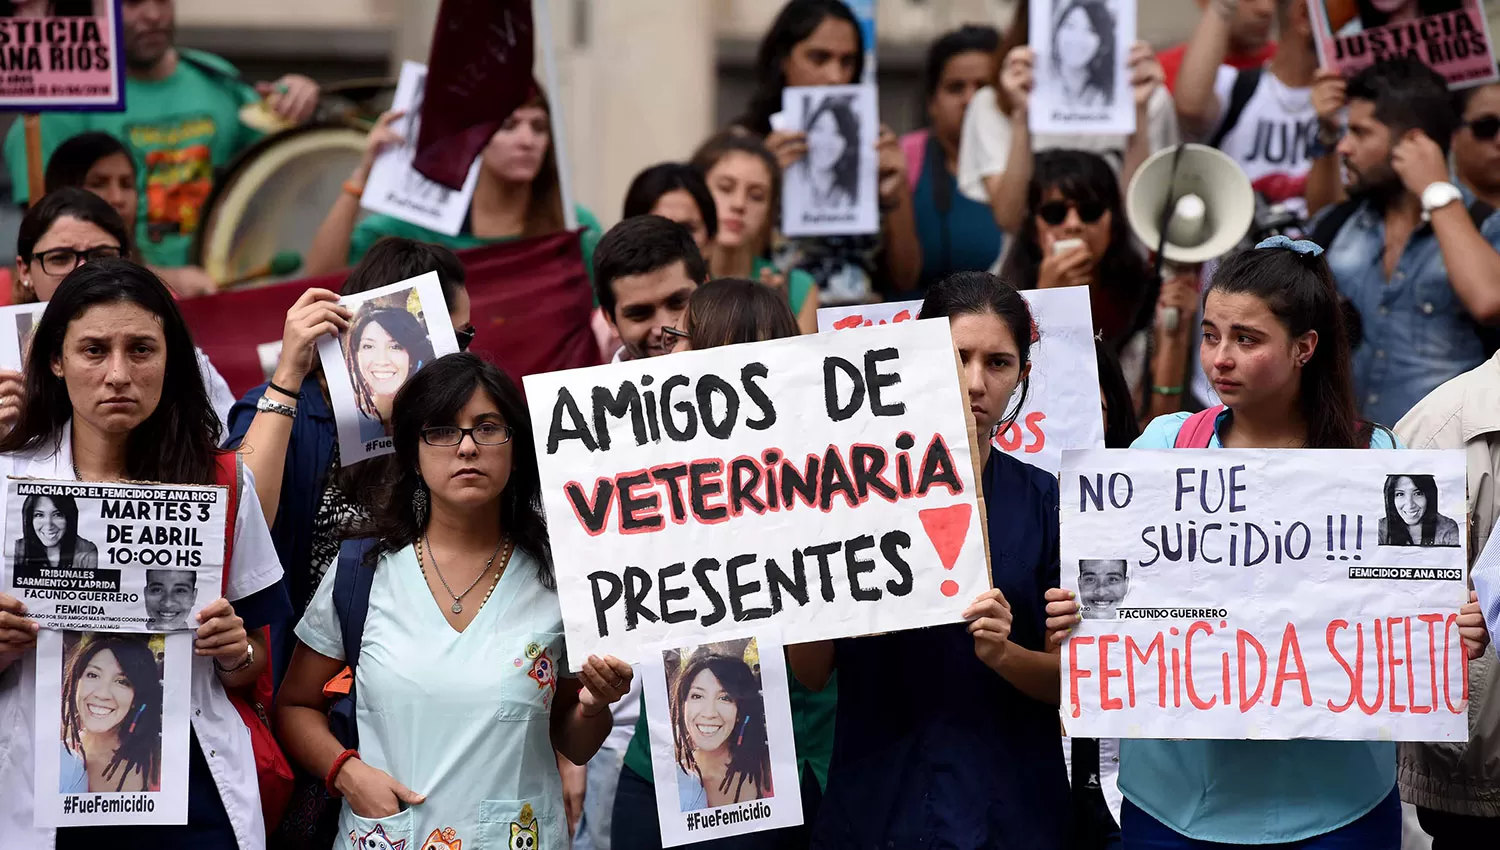 Los compañeros de Ana marcharon en Tucumán exigiendo justicia como también ocurrió en Jujuy. LA GACETA/FOTO DE ANALÍA JARAMILLO